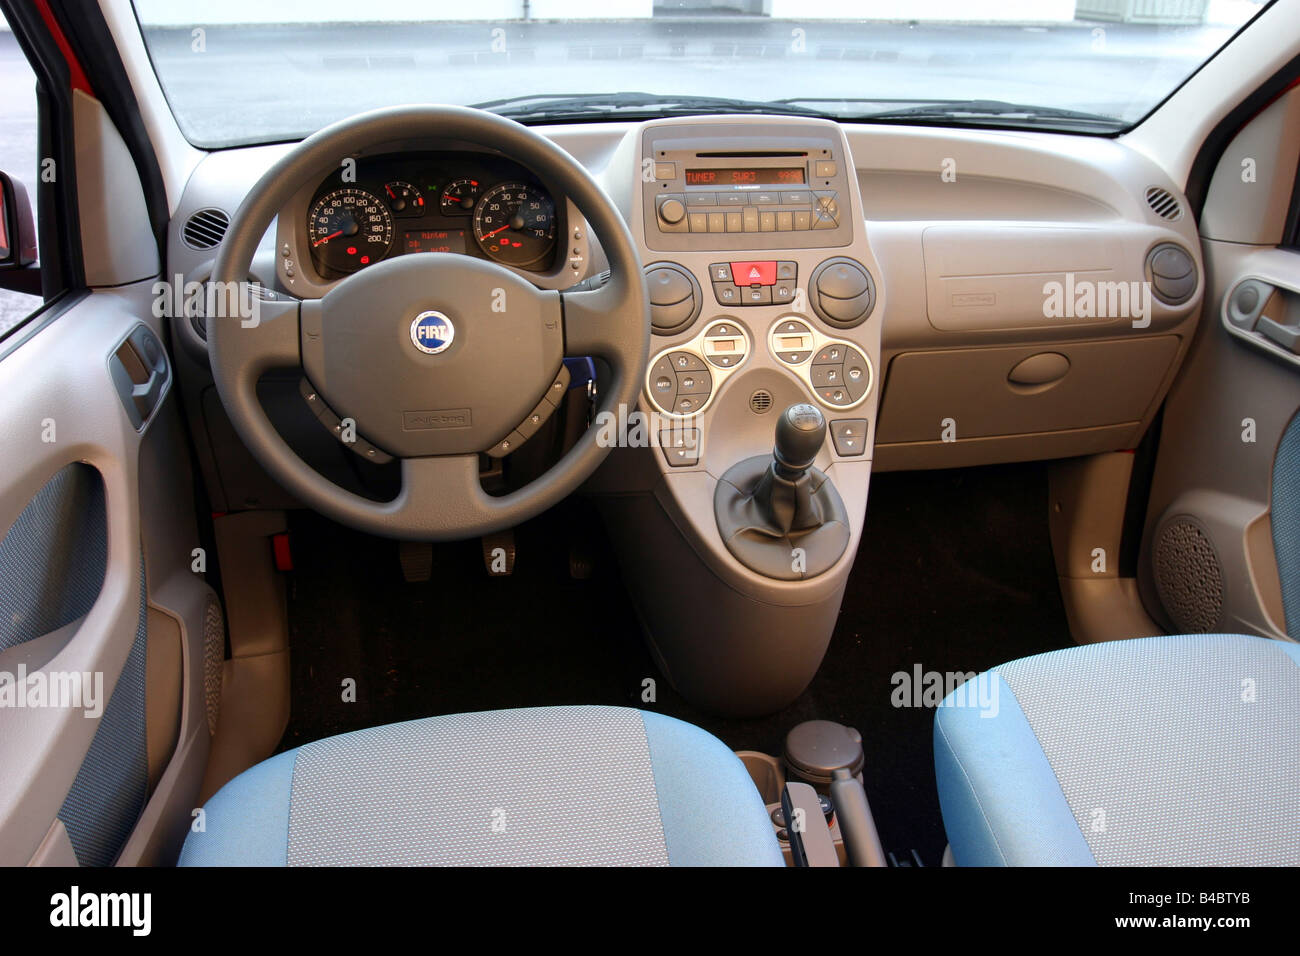 Coche, Fiat Panda 1.2 8V Emoción, Miniapprox.s, limusina, modelo del año 2003-, rojo, vista interior, desde el interior, cabina, técnica Fotografía de stock - Alamy